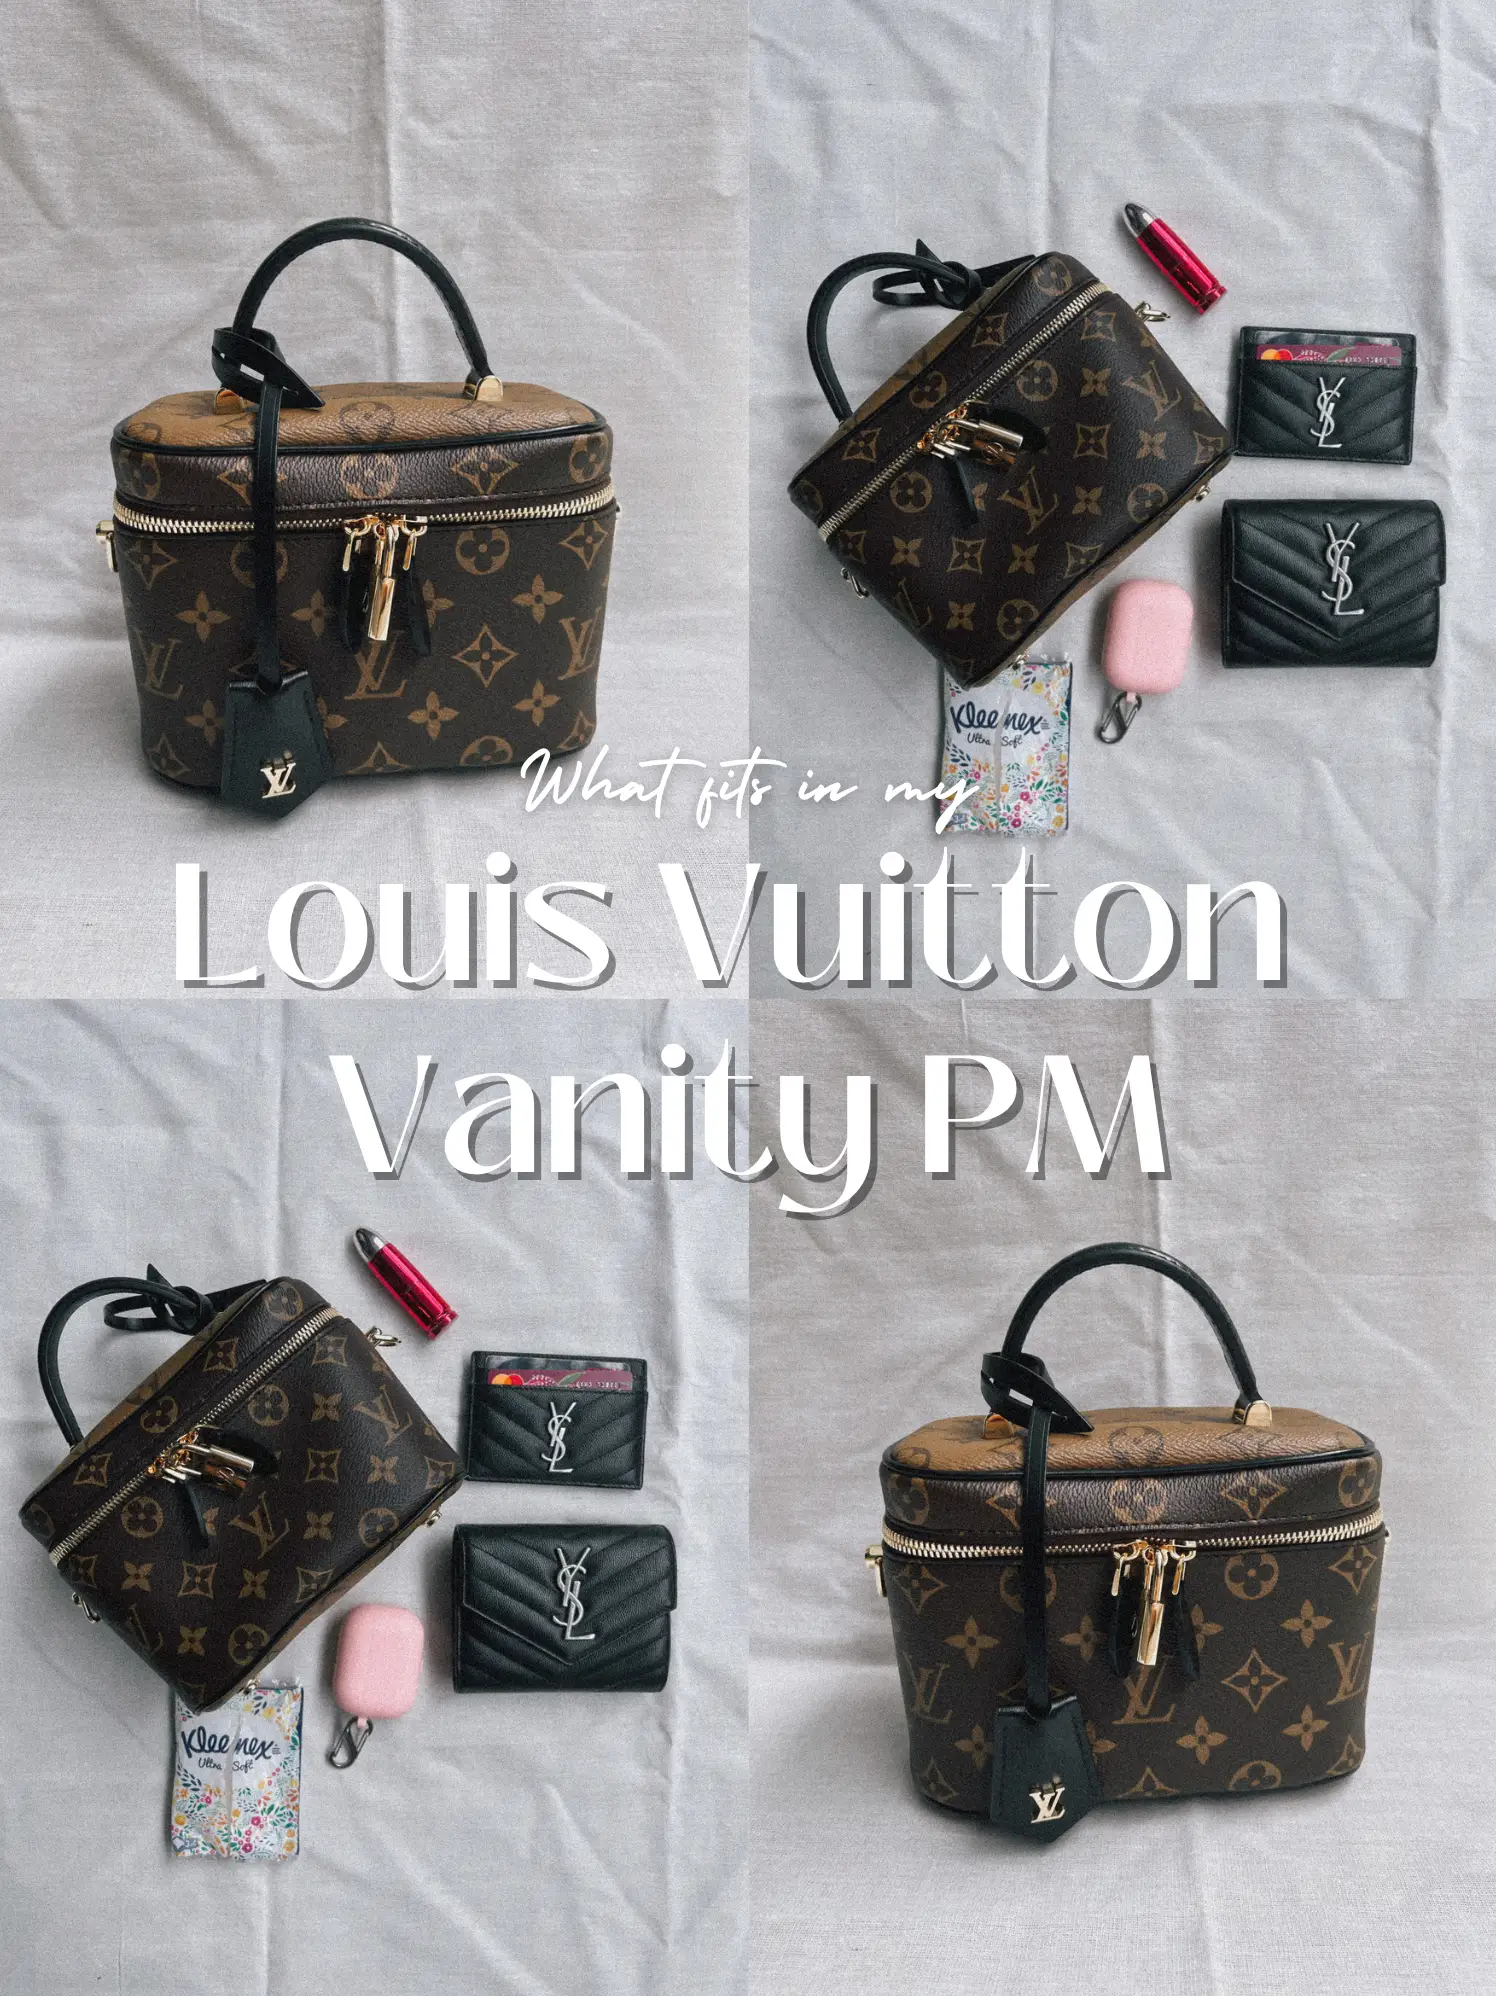 Louis Vuitton Vanity Pm Reviews